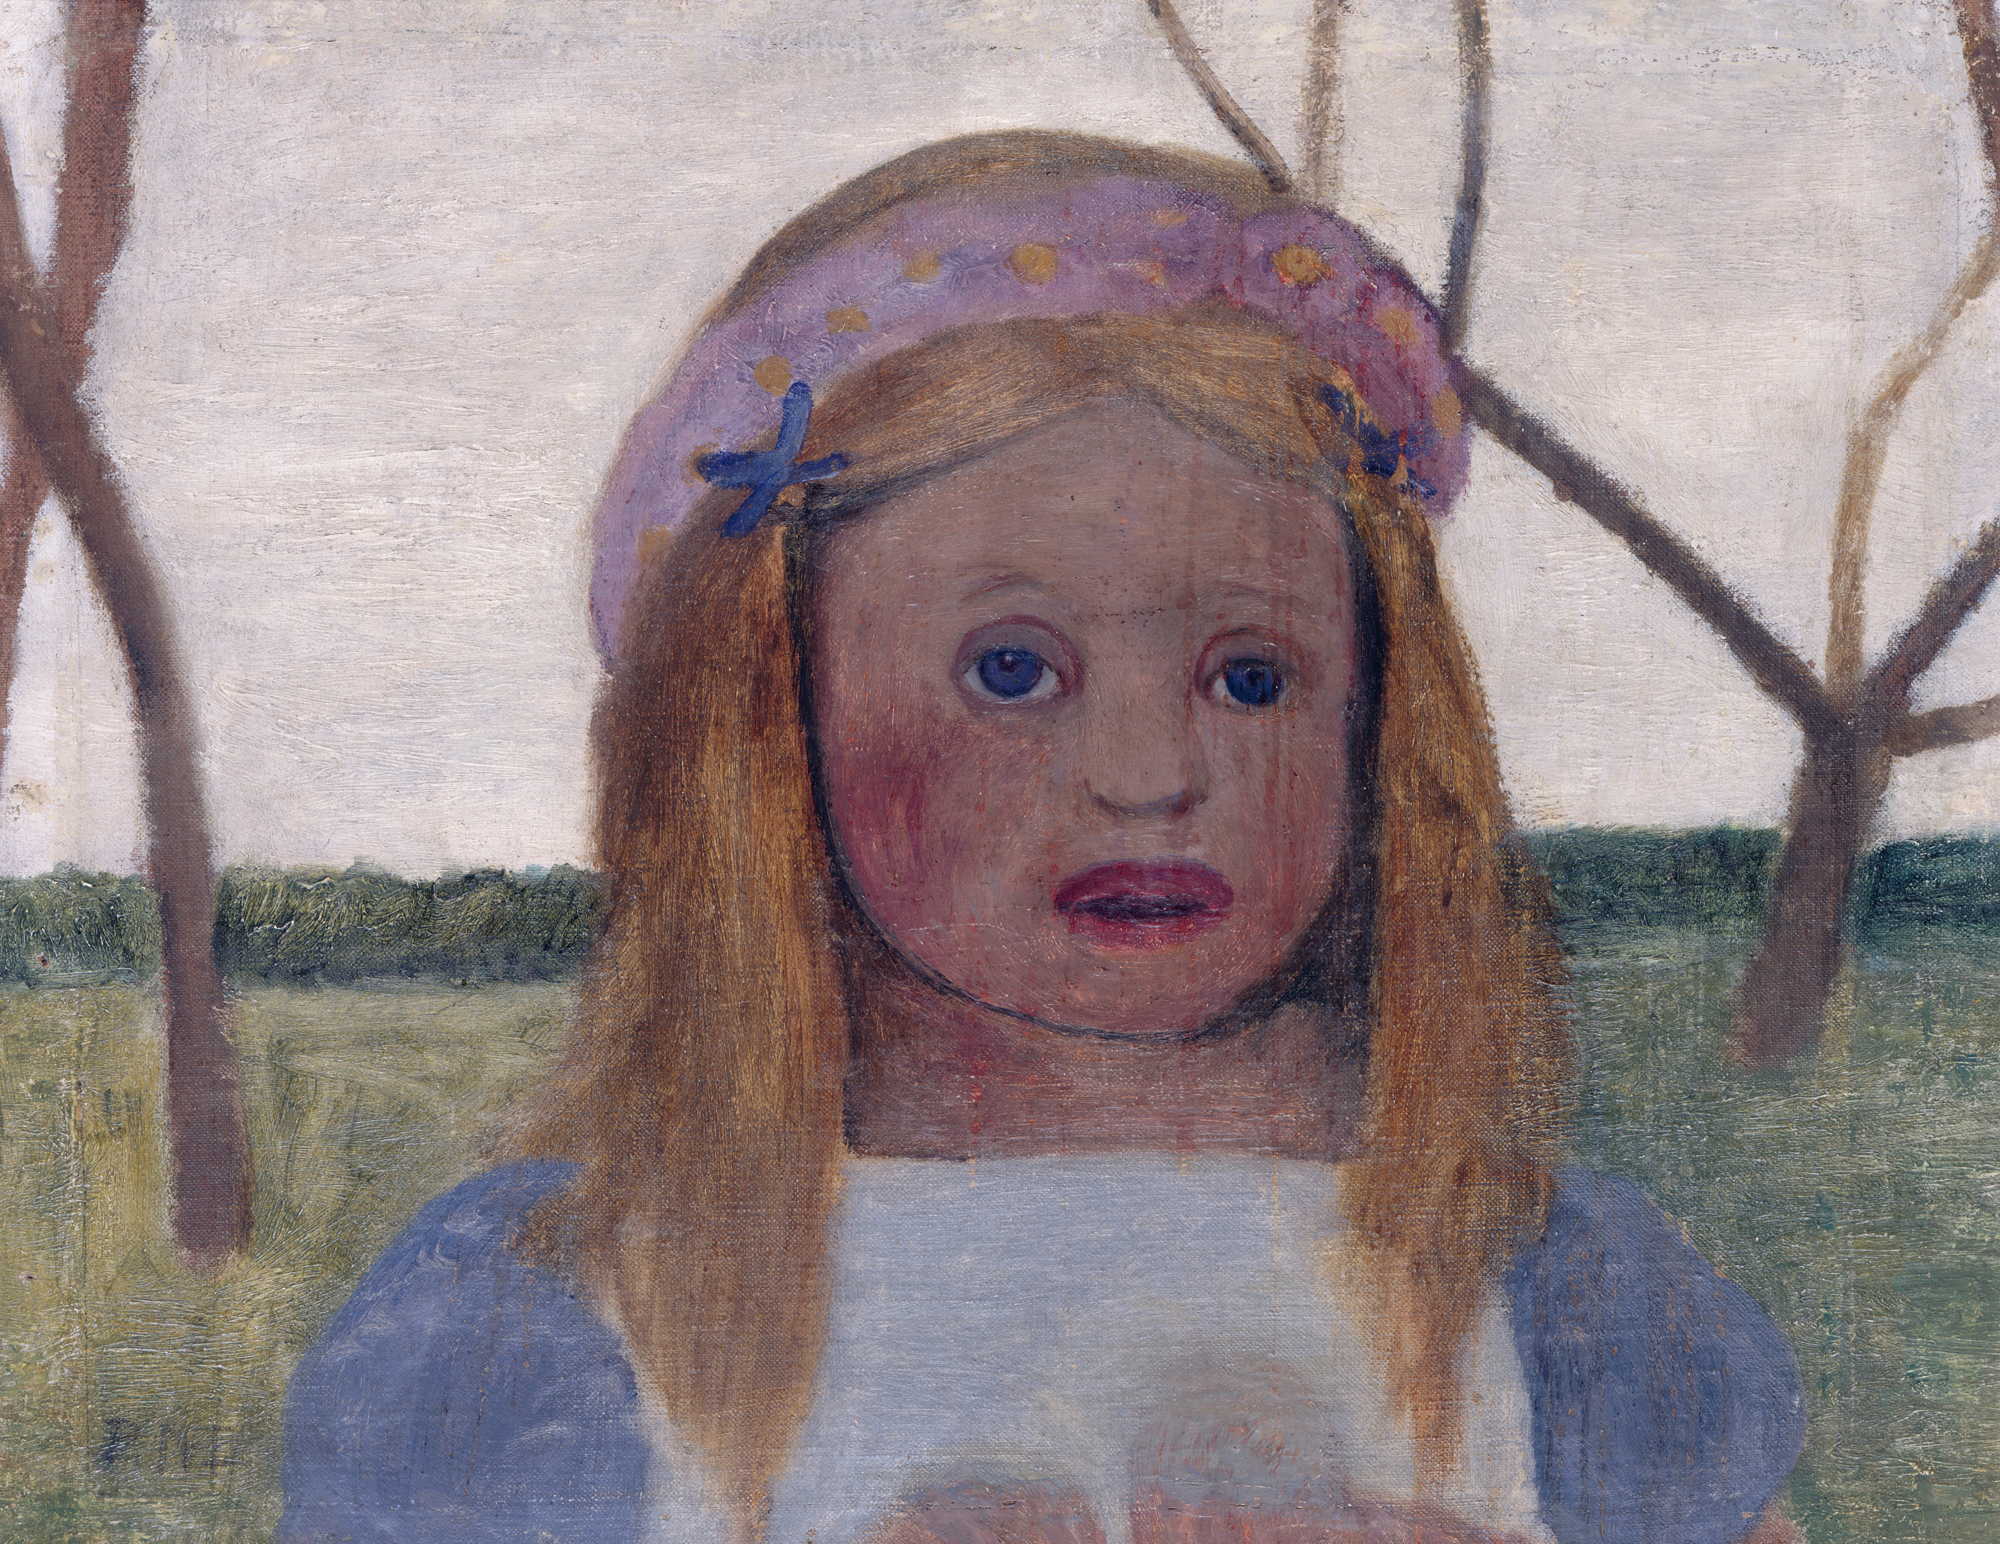 Girl with Flower Garland by Paula Modersohn-Becker - 1901 Alte Nationalgalerie